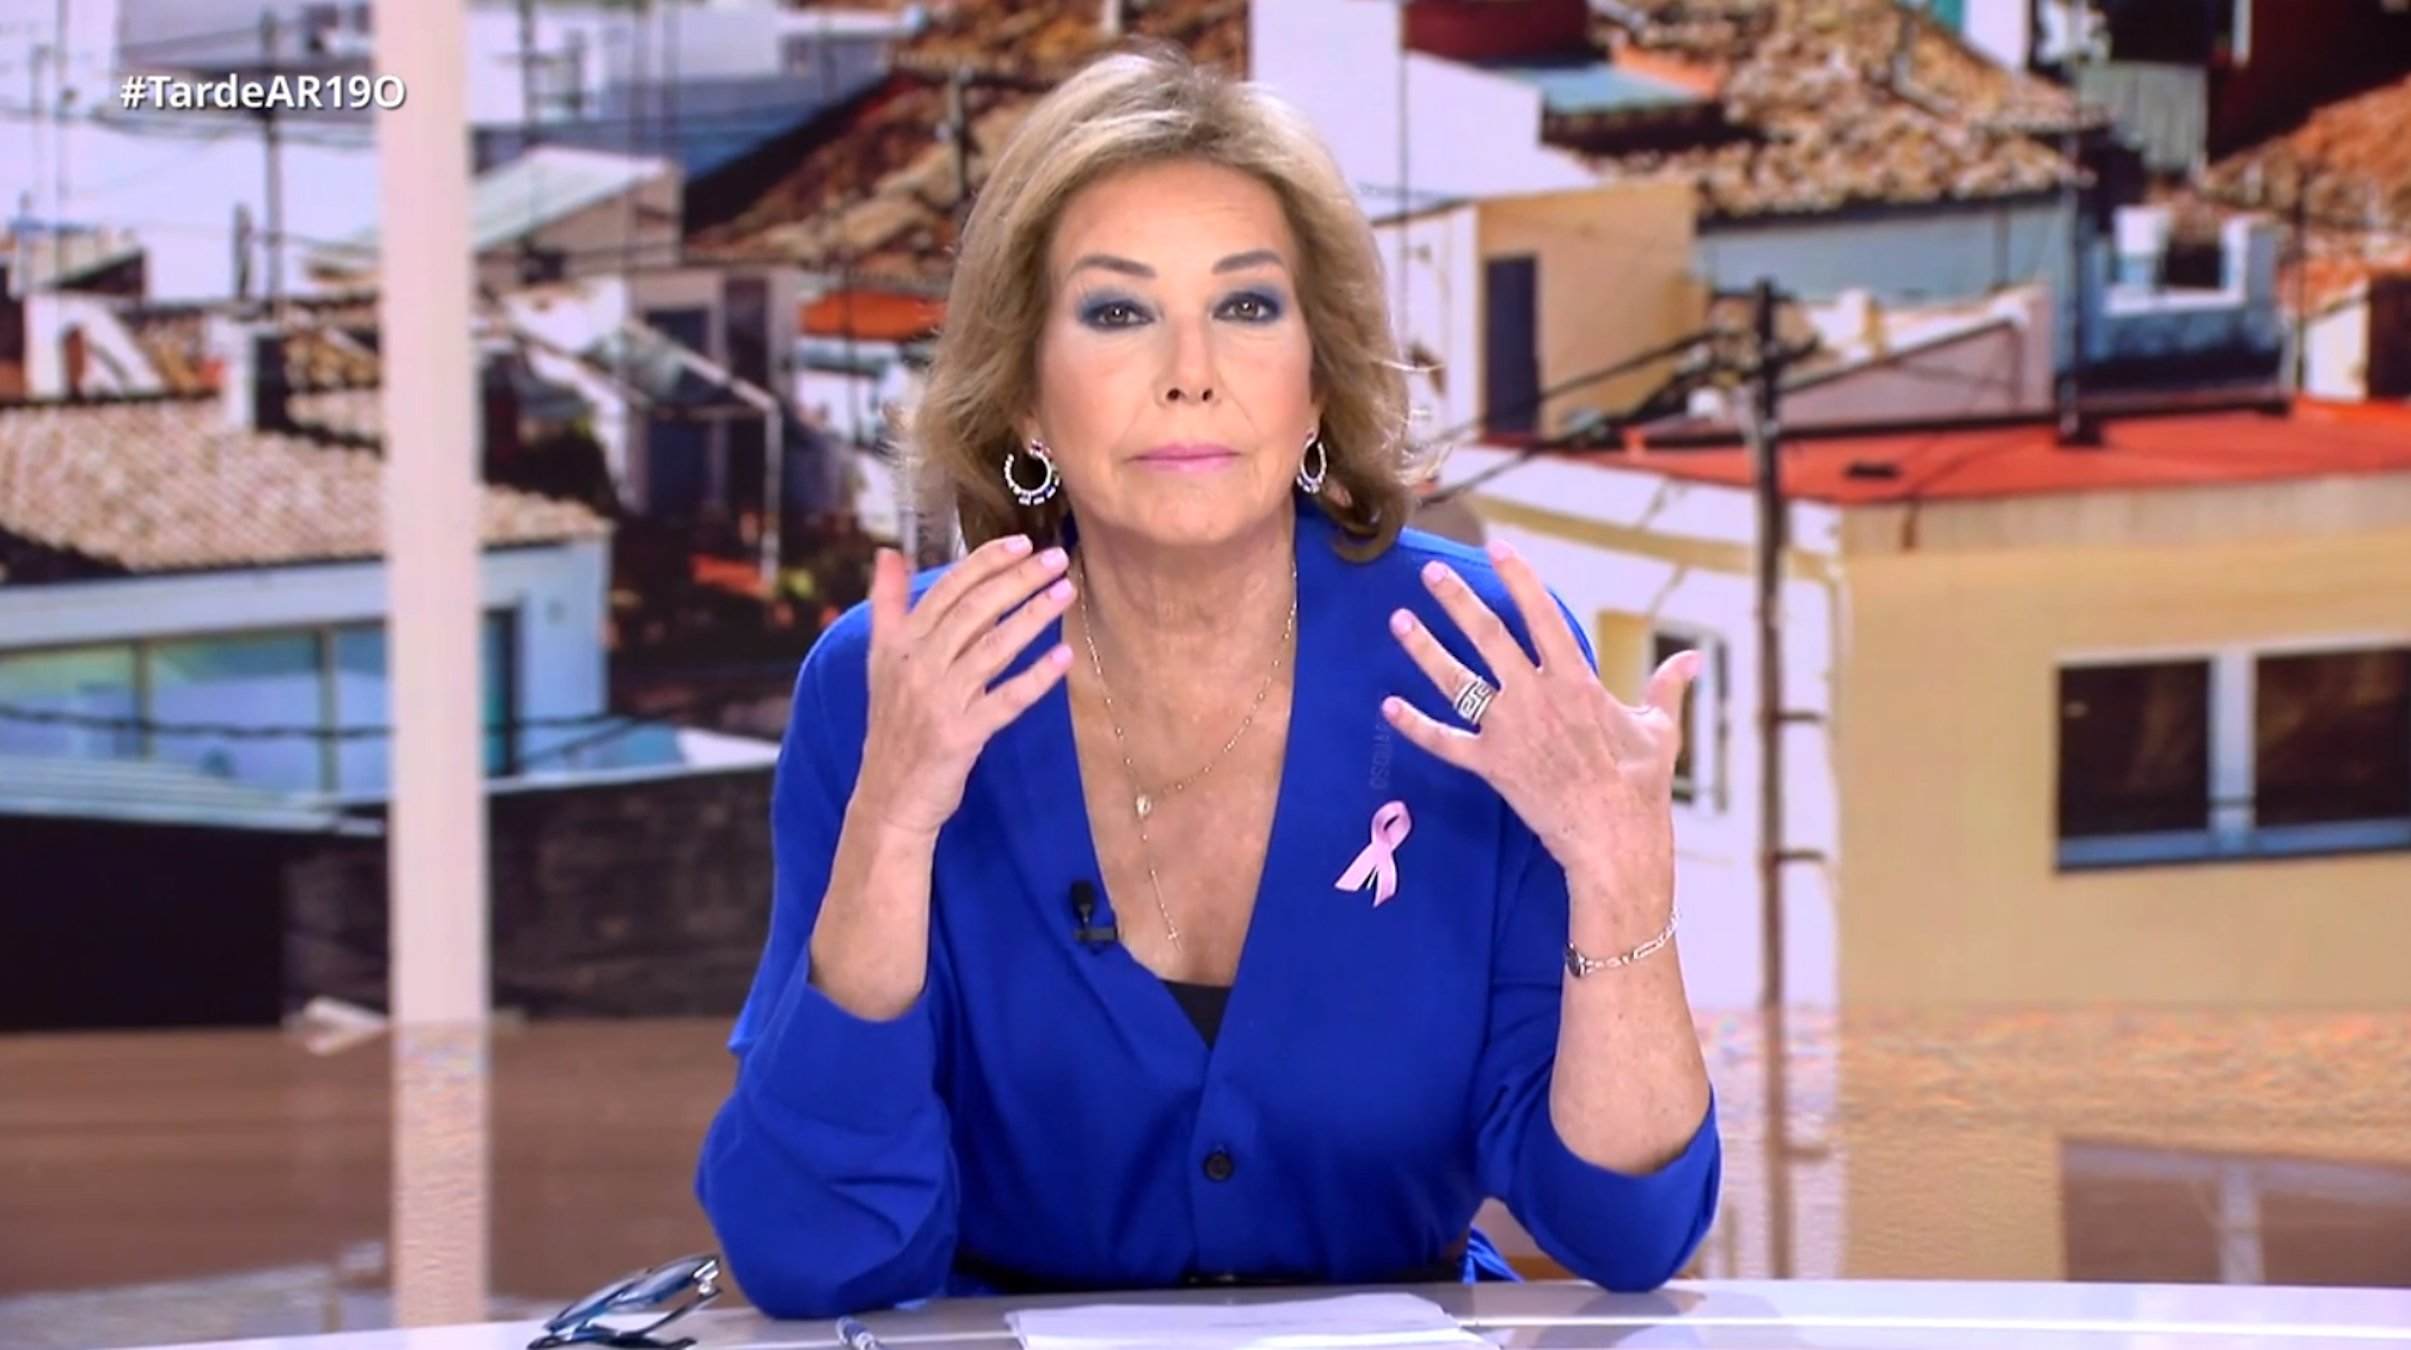 Ana Rosa Quintana endolla la família a Telecinco, el seu fill a 'TardeAR', fracàs